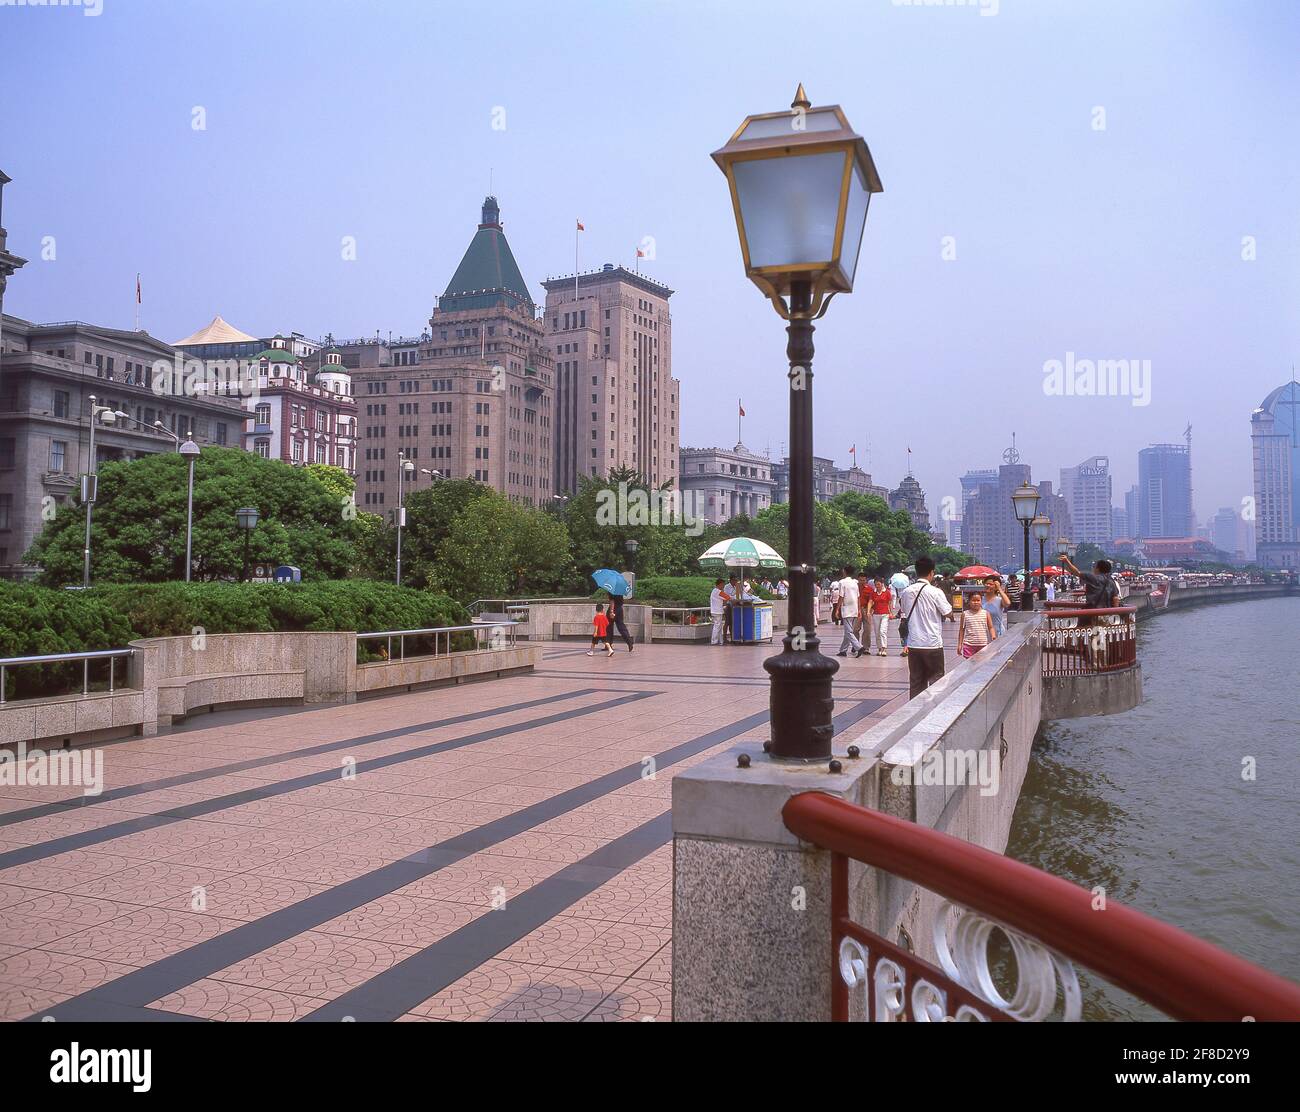 Promenade au bord de la rivière, le Bund, Shanghai, République populaire de Chine Banque D'Images